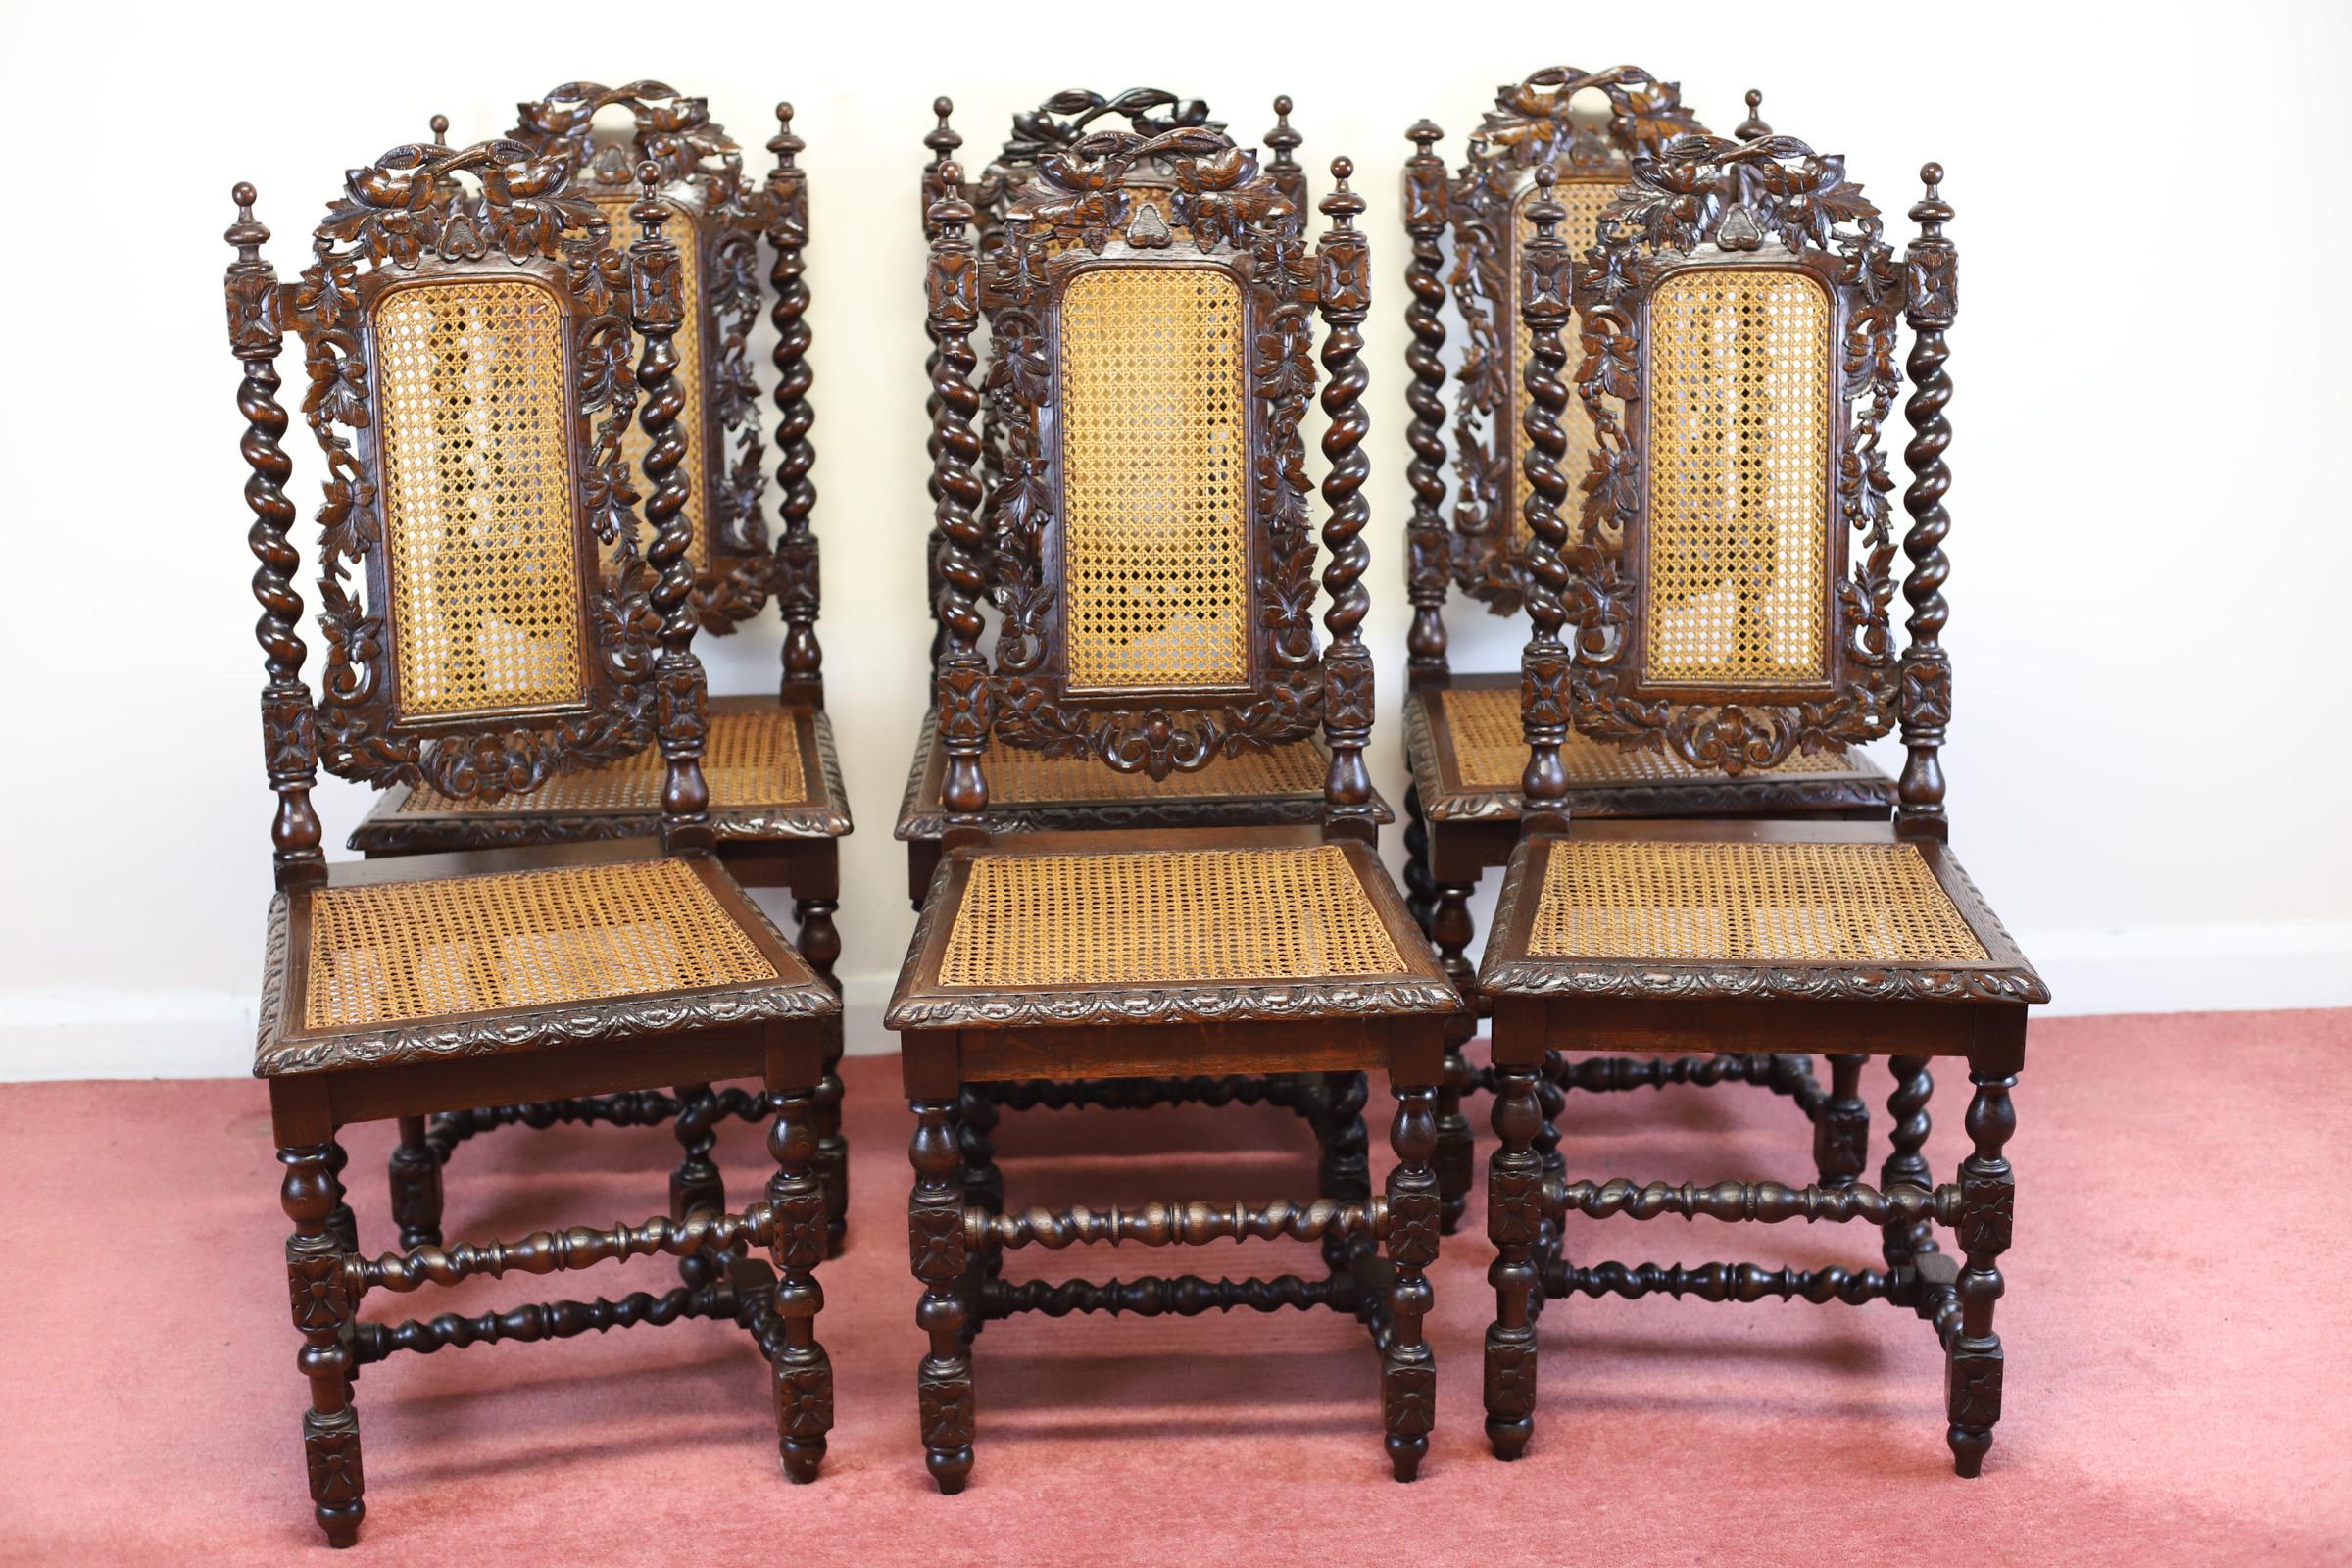 Hochdekorativer Satz von sechs antiken viktorianischen Jacobean-Eichenstühlen aus der Zeit um 1870. Sie haben kunstvoll geschnitzte Rückenlehnen mit geschnitzten und durchbrochenen Mittelplatten und eine geschnitzte Rückenschiene, die Weinblätter